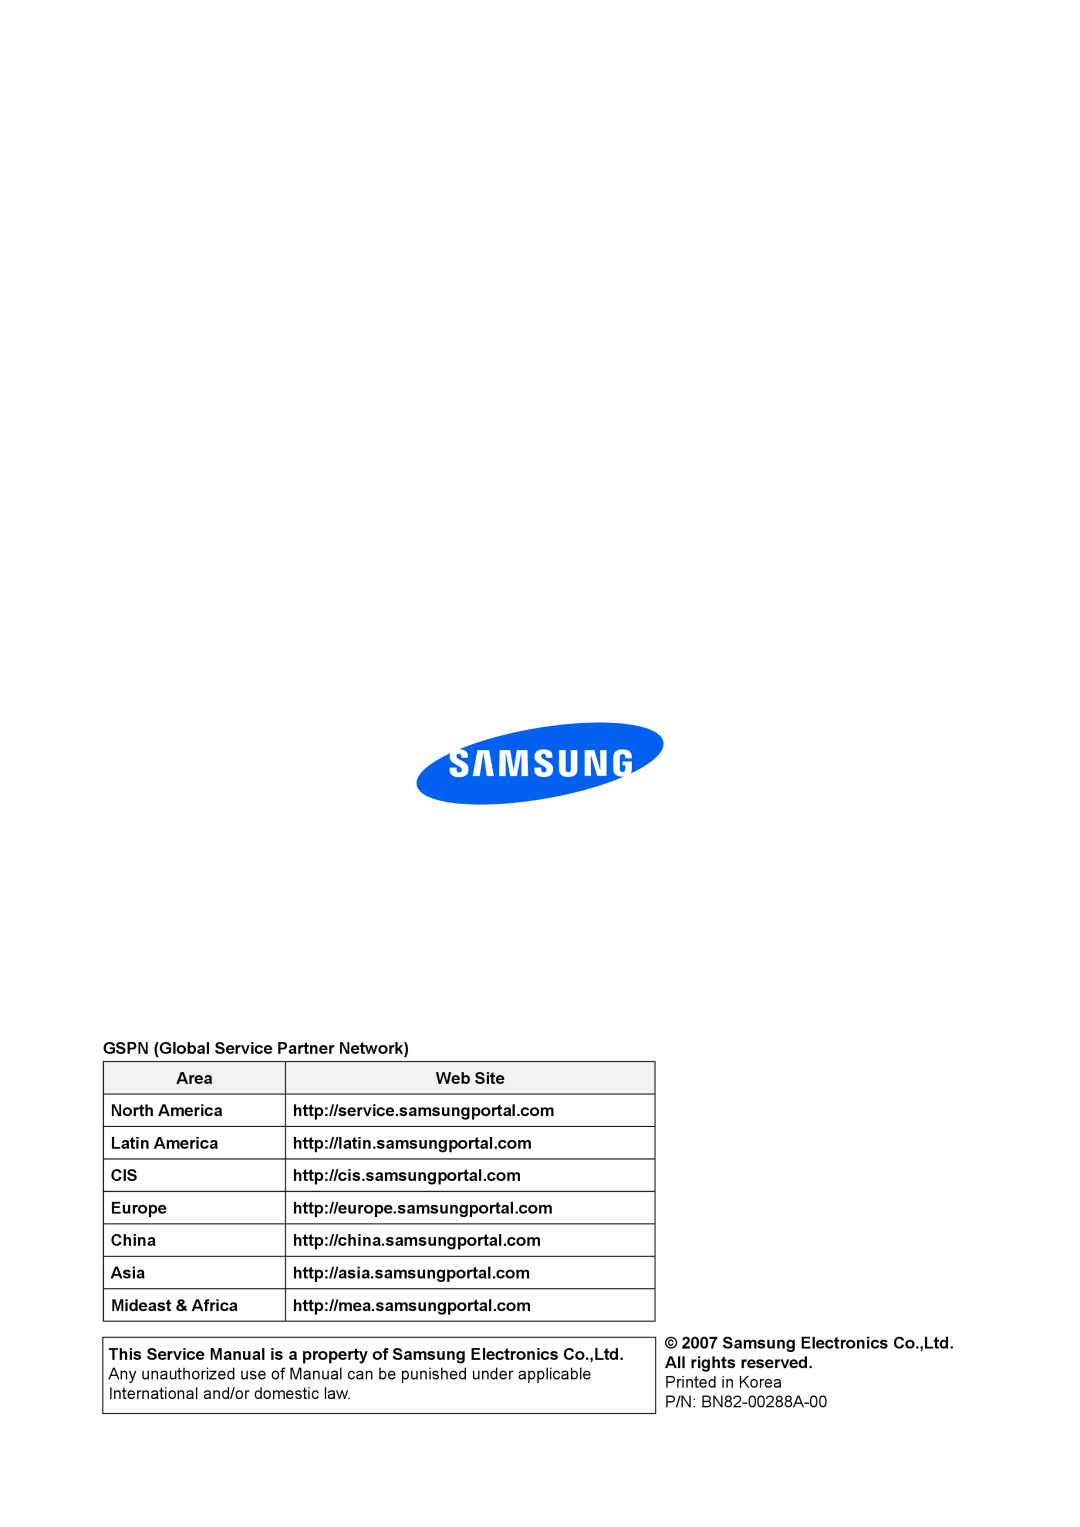 Samsung 943NWX service manual GSPN Global Service Partner Network 